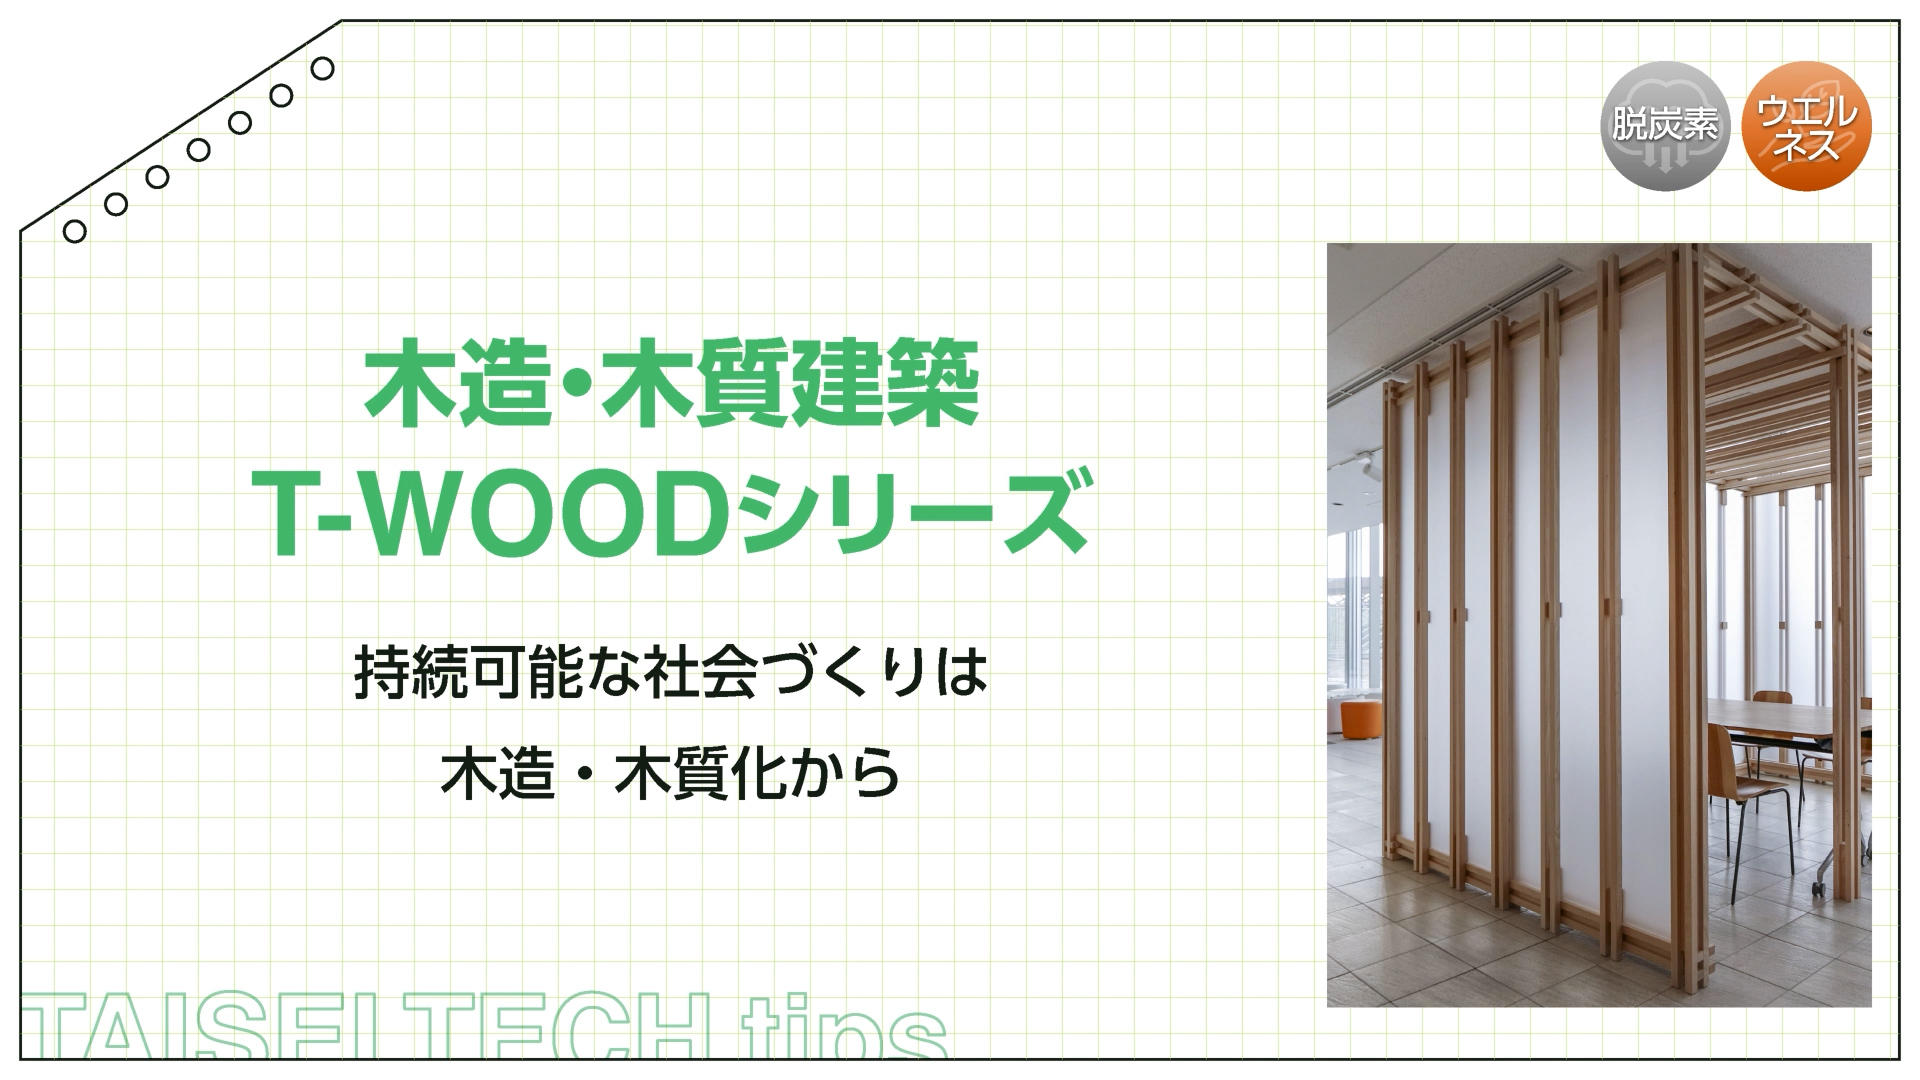 T-WOODシリーズ